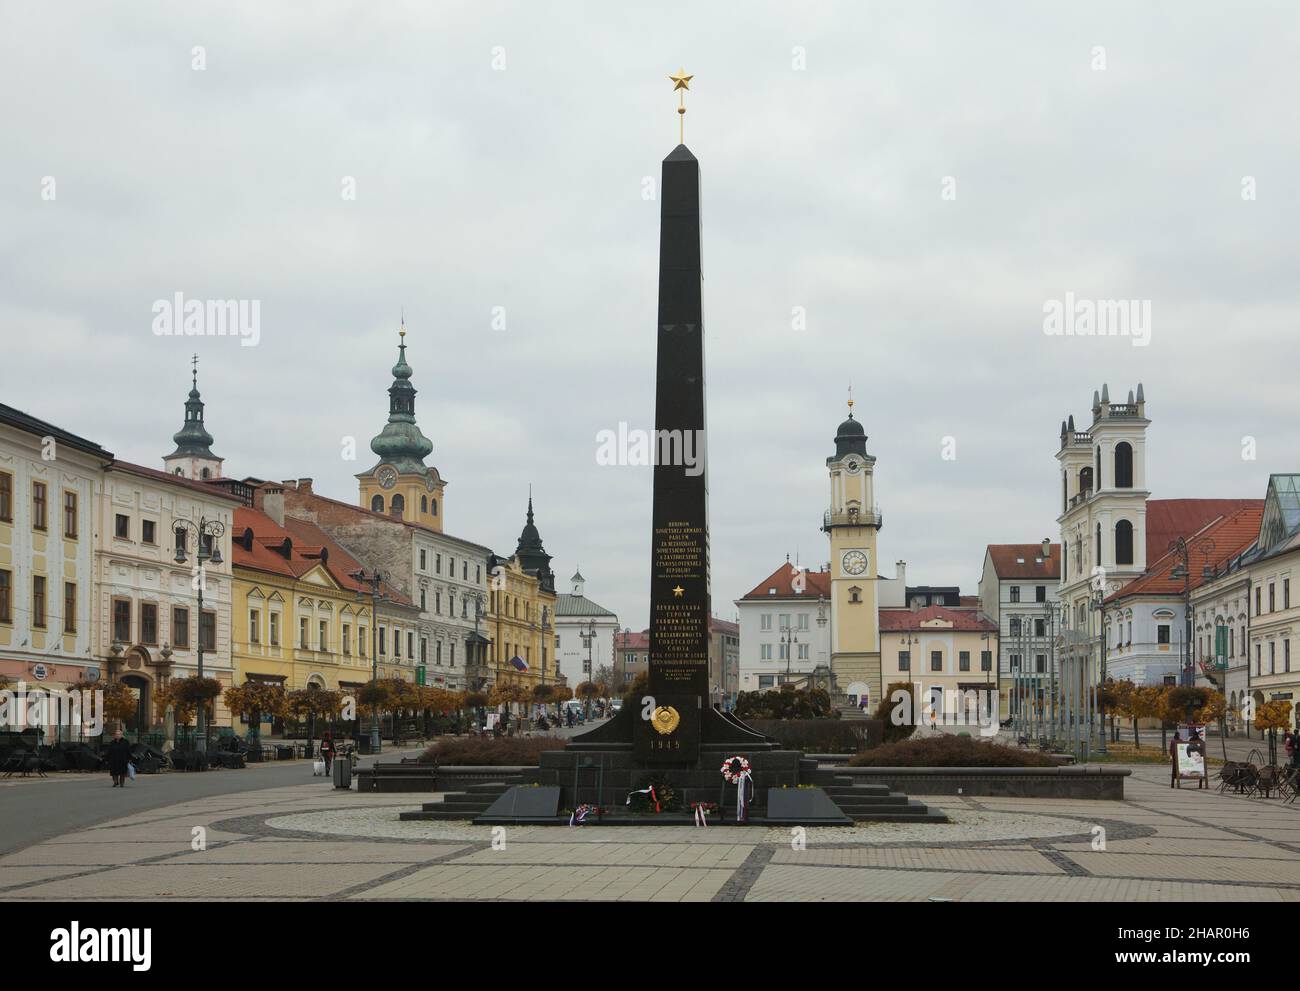 Soviet War Memorial known as the Black Obelisk (Čierny obelisk) in the SNP Square in Banská Bystrica, Slovakia. Stock Photo